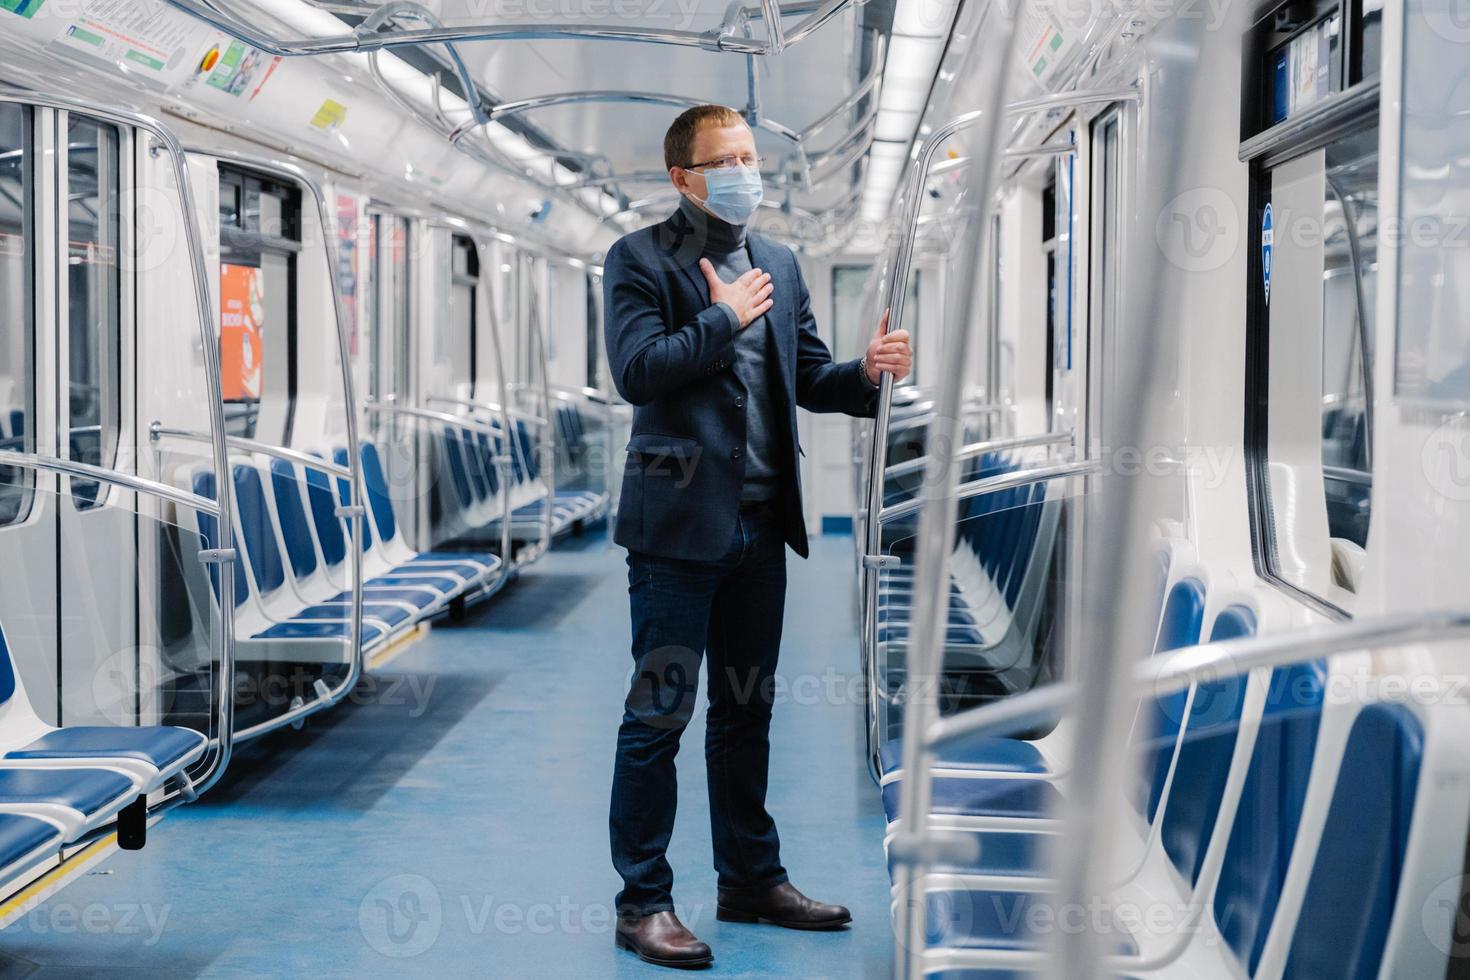 coronavirus (COVID-19. zieke man voelt zich onwel, ademt te kort, draagt medisch masker, poseert in metrowagon, beschermt tegen besmettelijke ziekte, vermijdt contact met mensen en virussen foto